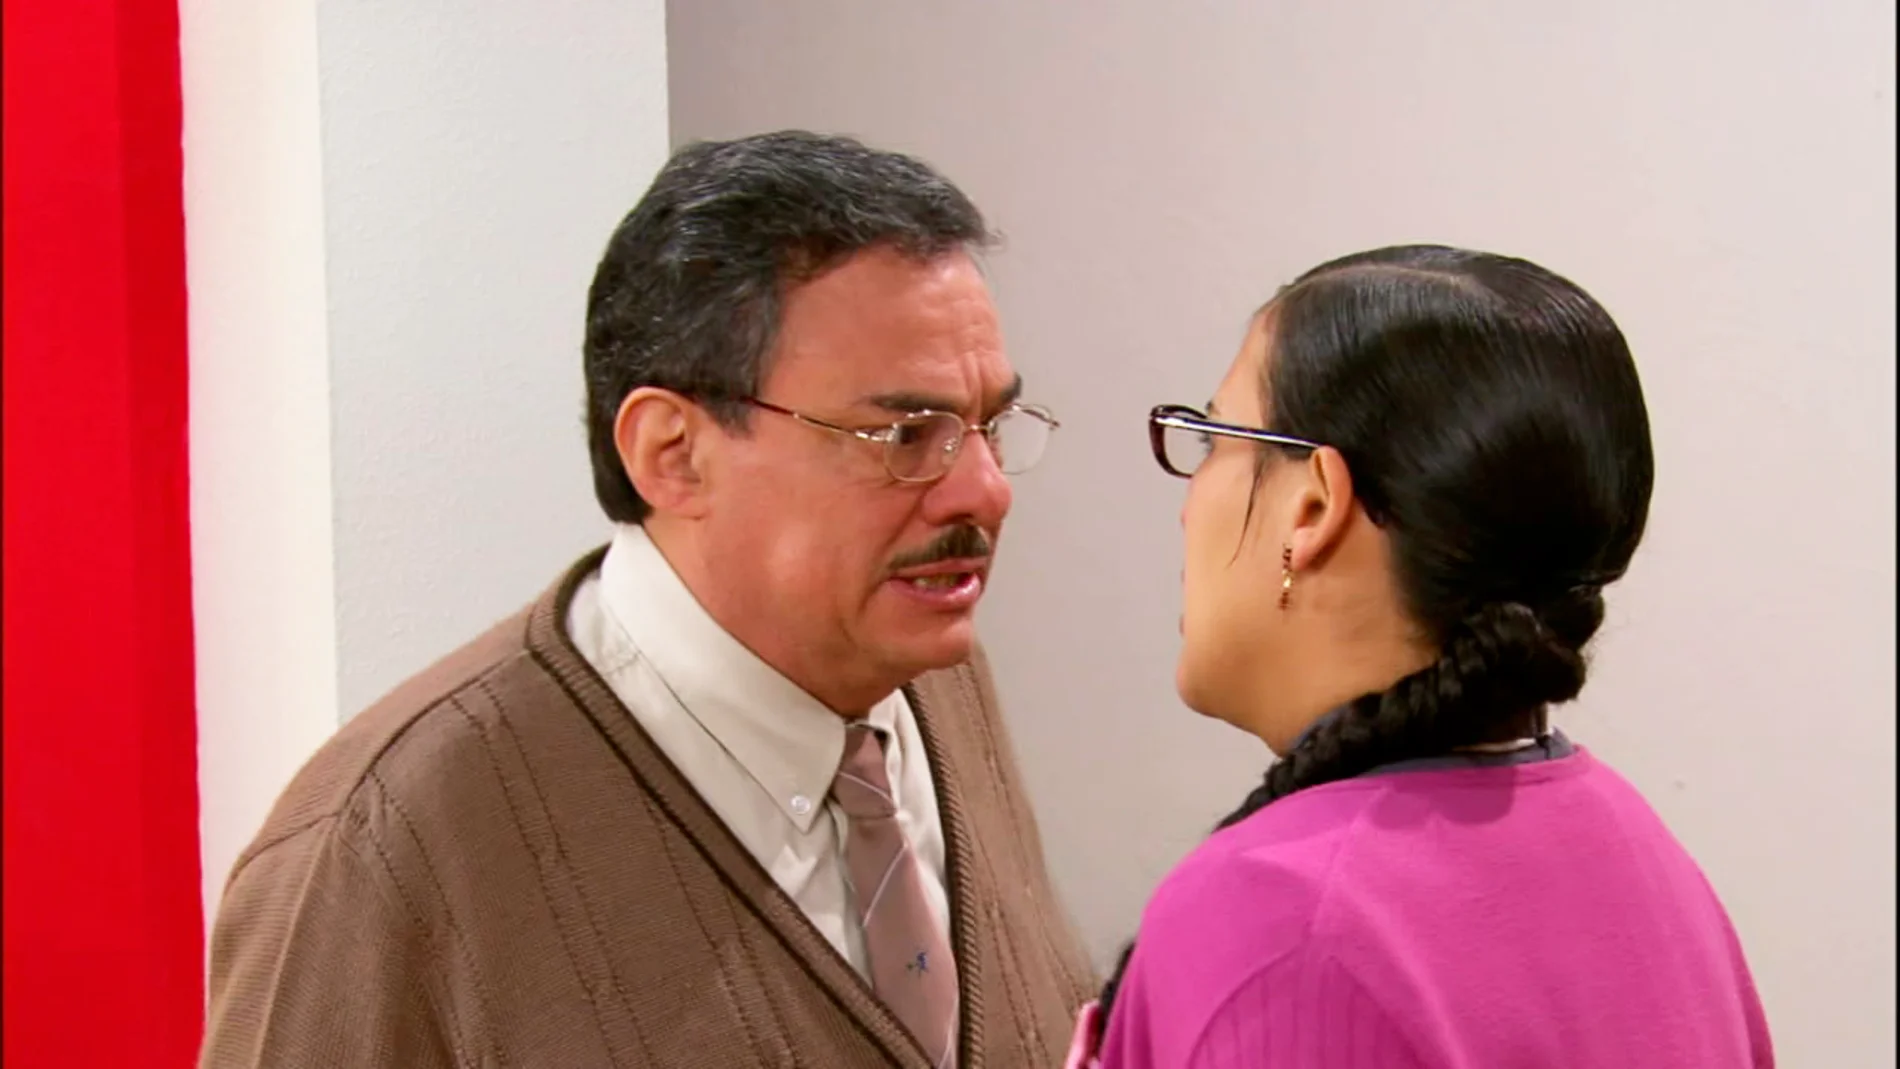 El padre de Lety acude a la oficina para reprochar a Don Fernando la actitud con su hija 